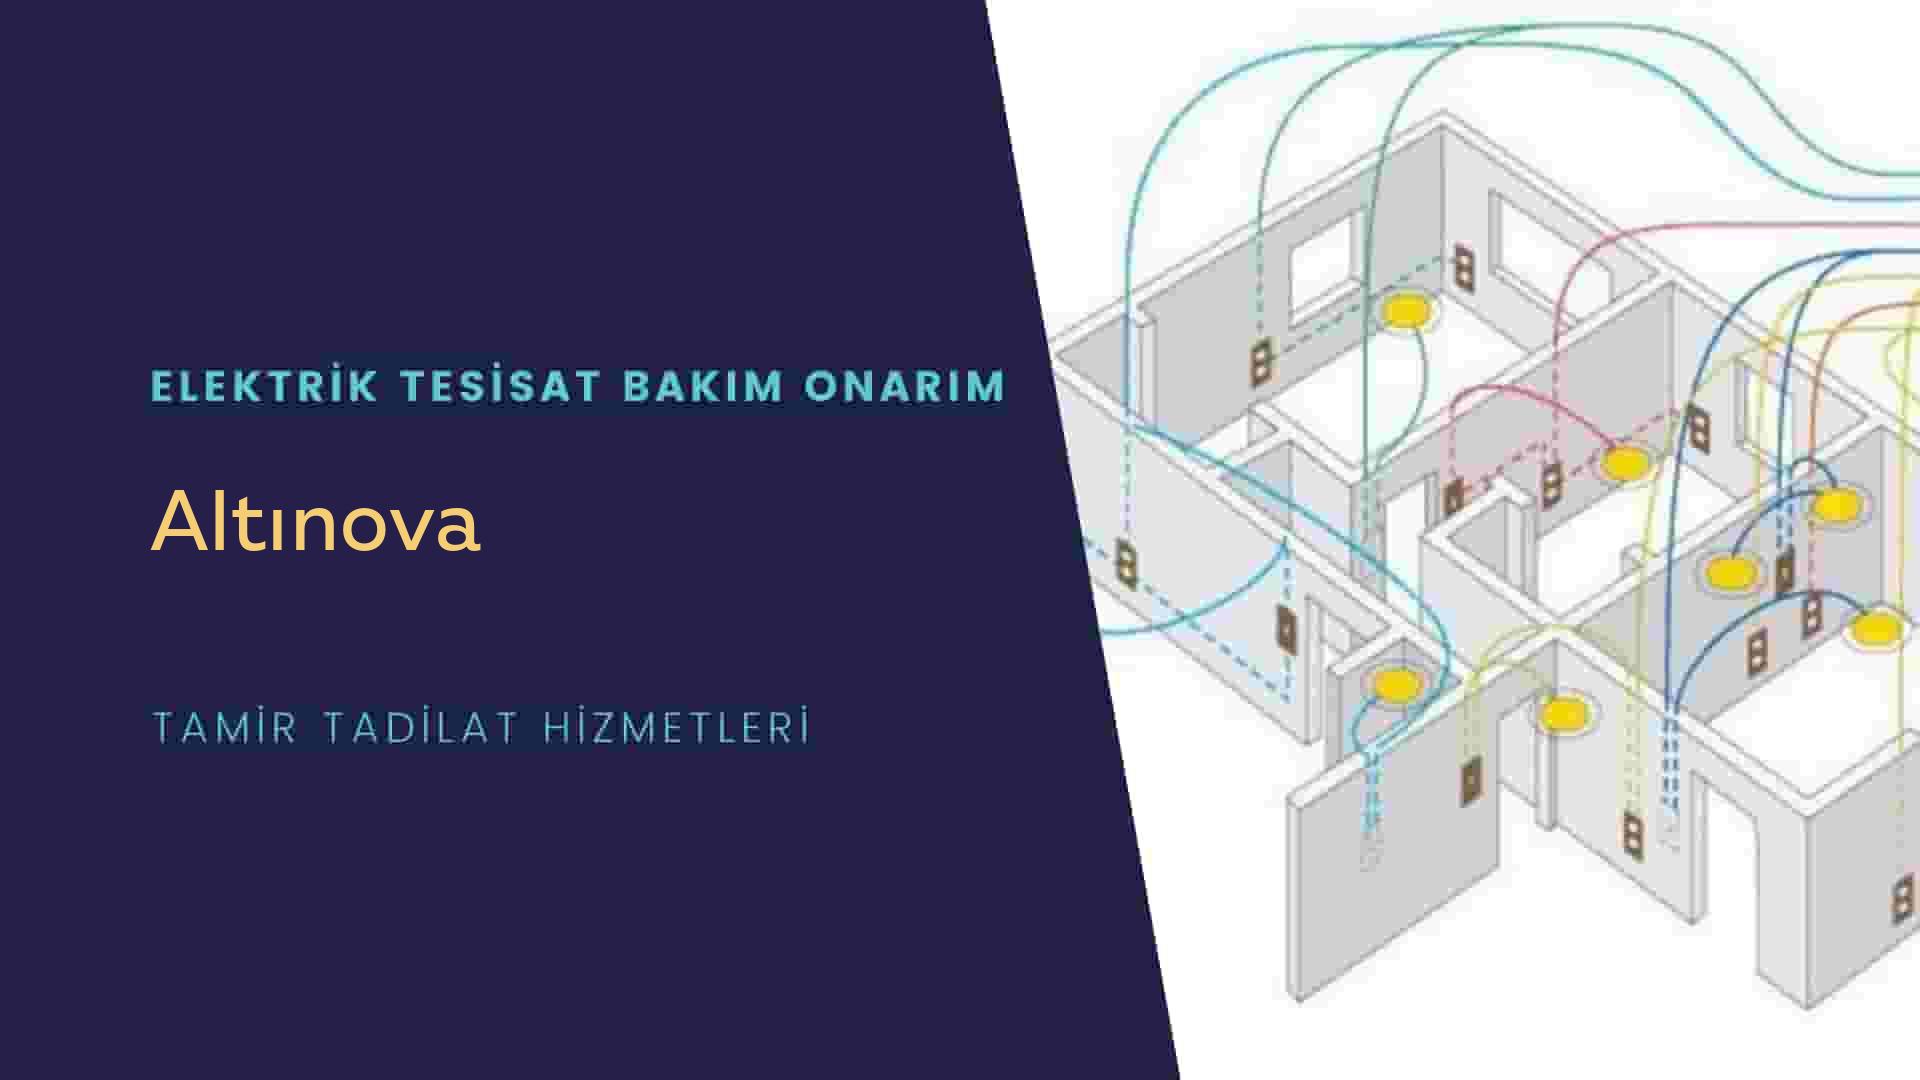 Altınova'da elektrik tesisatı ustalarımı arıyorsunuz doğru adrestenizi Altınova elektrik tesisatı ustalarımız 7/24 sizlere hizmet vermekten mutluluk duyar.